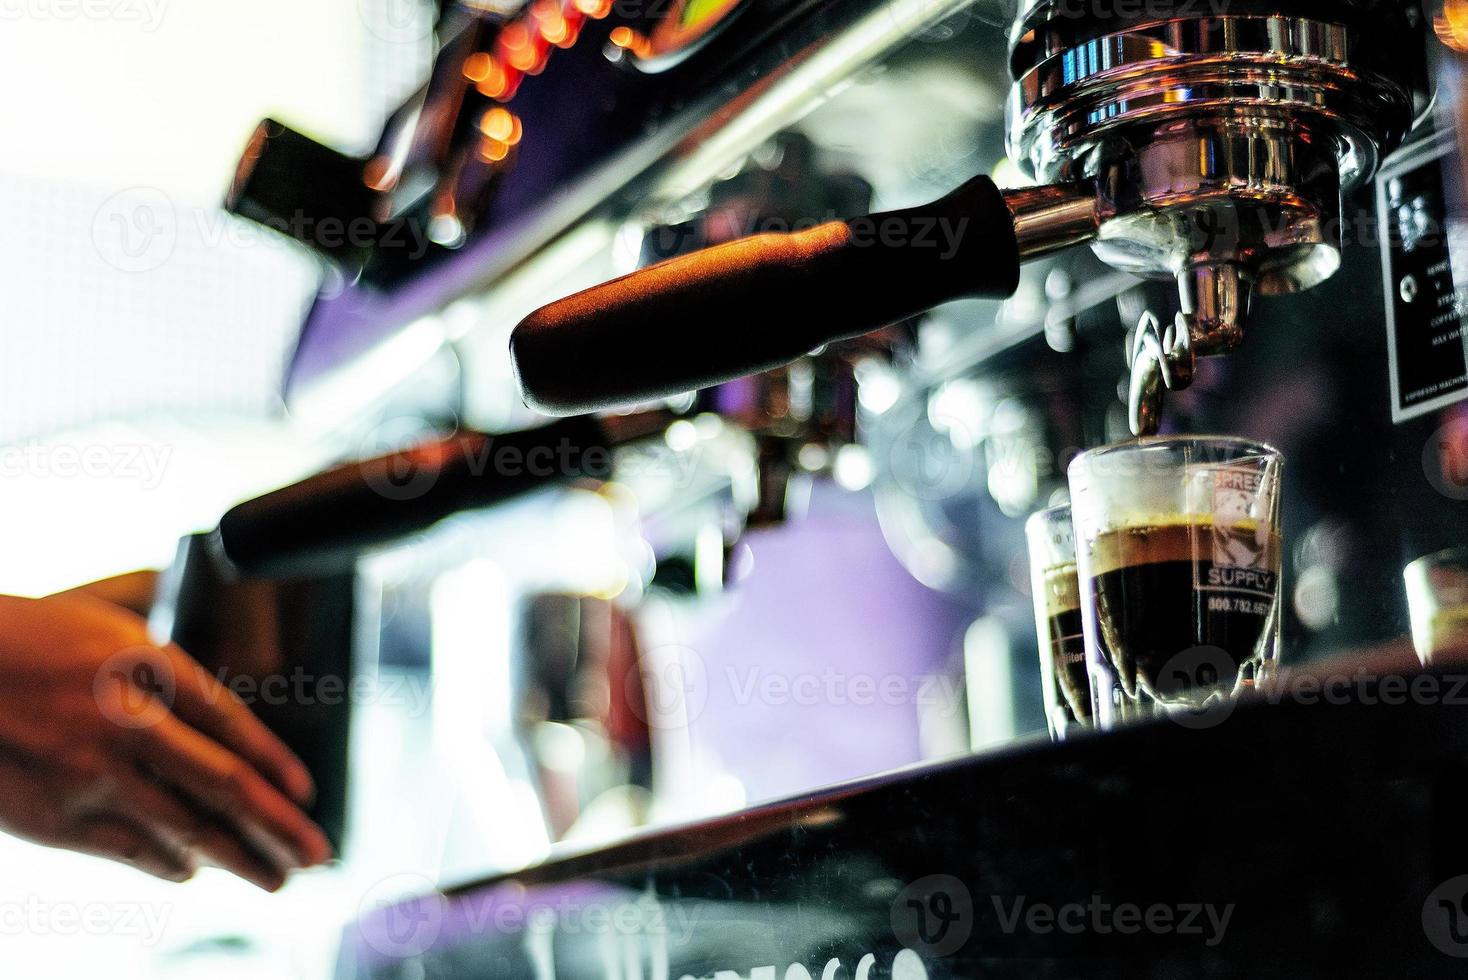 espressokoffie maken close-up detail met moderne cafémachine foto